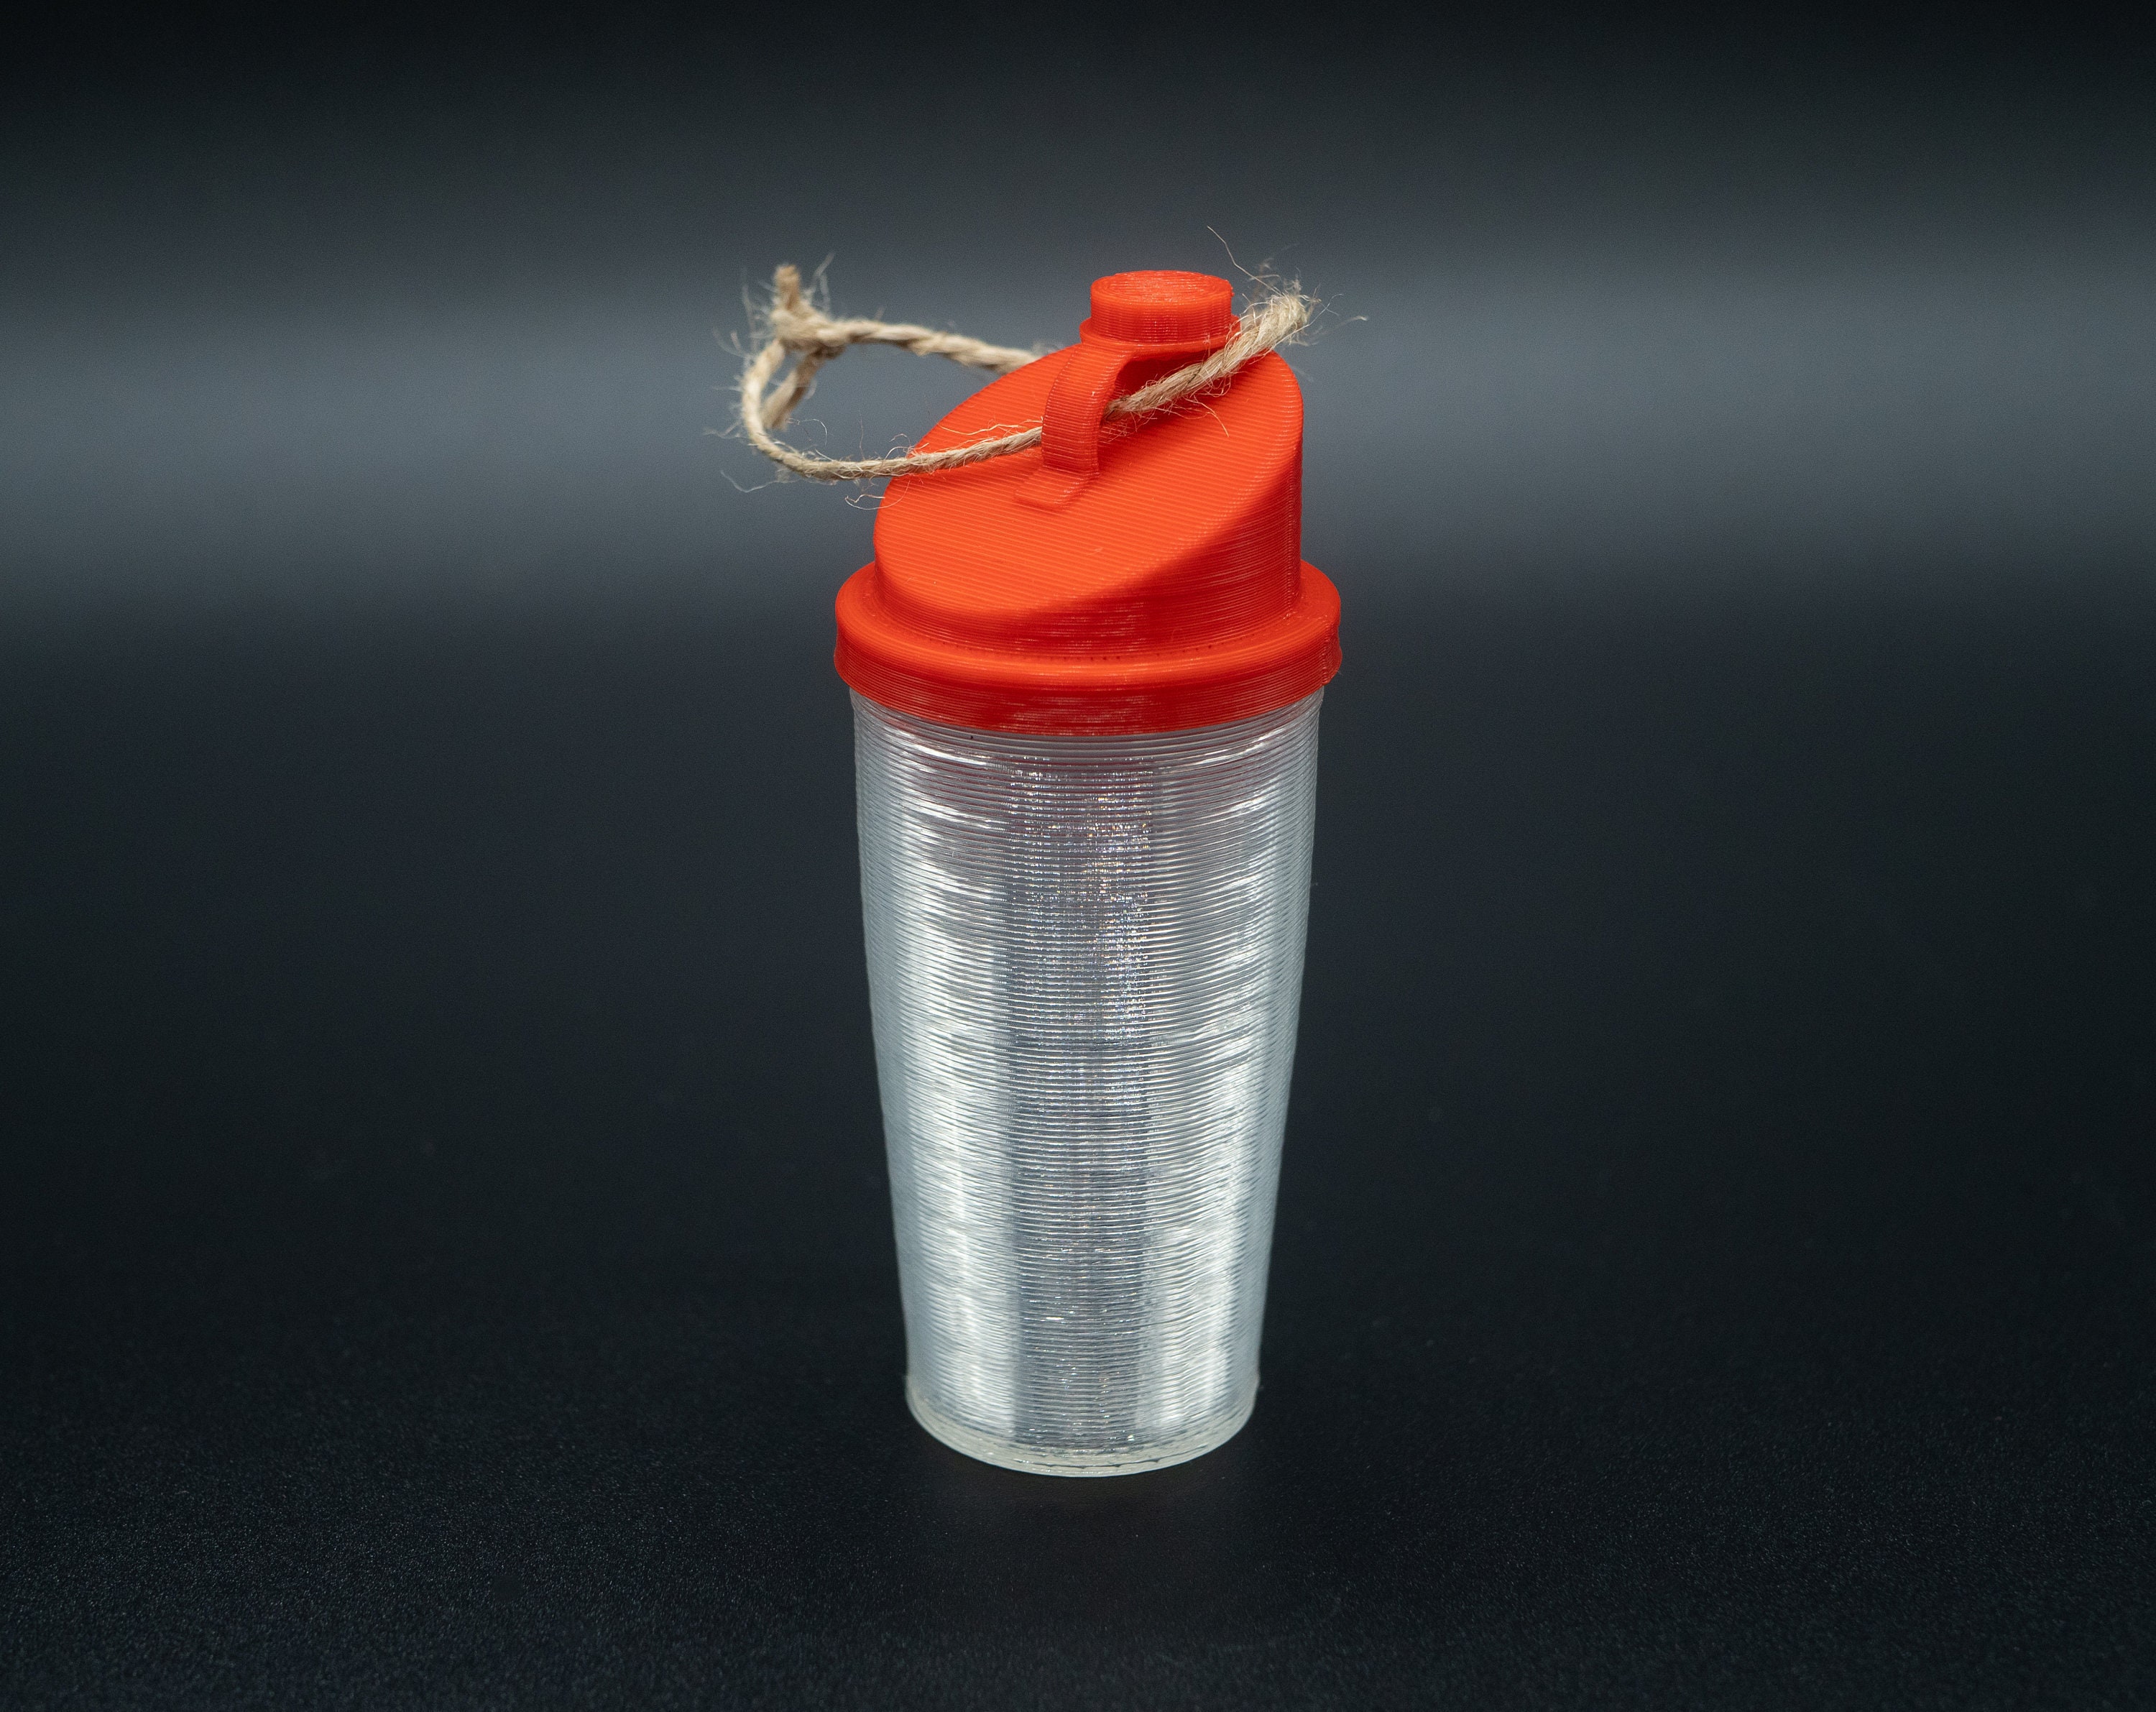 Earthmade Motivation Protein Shaker Bottle Stainless Steel, 28 Oz Insulated  Shaker Bottles for Prote…See more Earthmade Motivation Protein Shaker